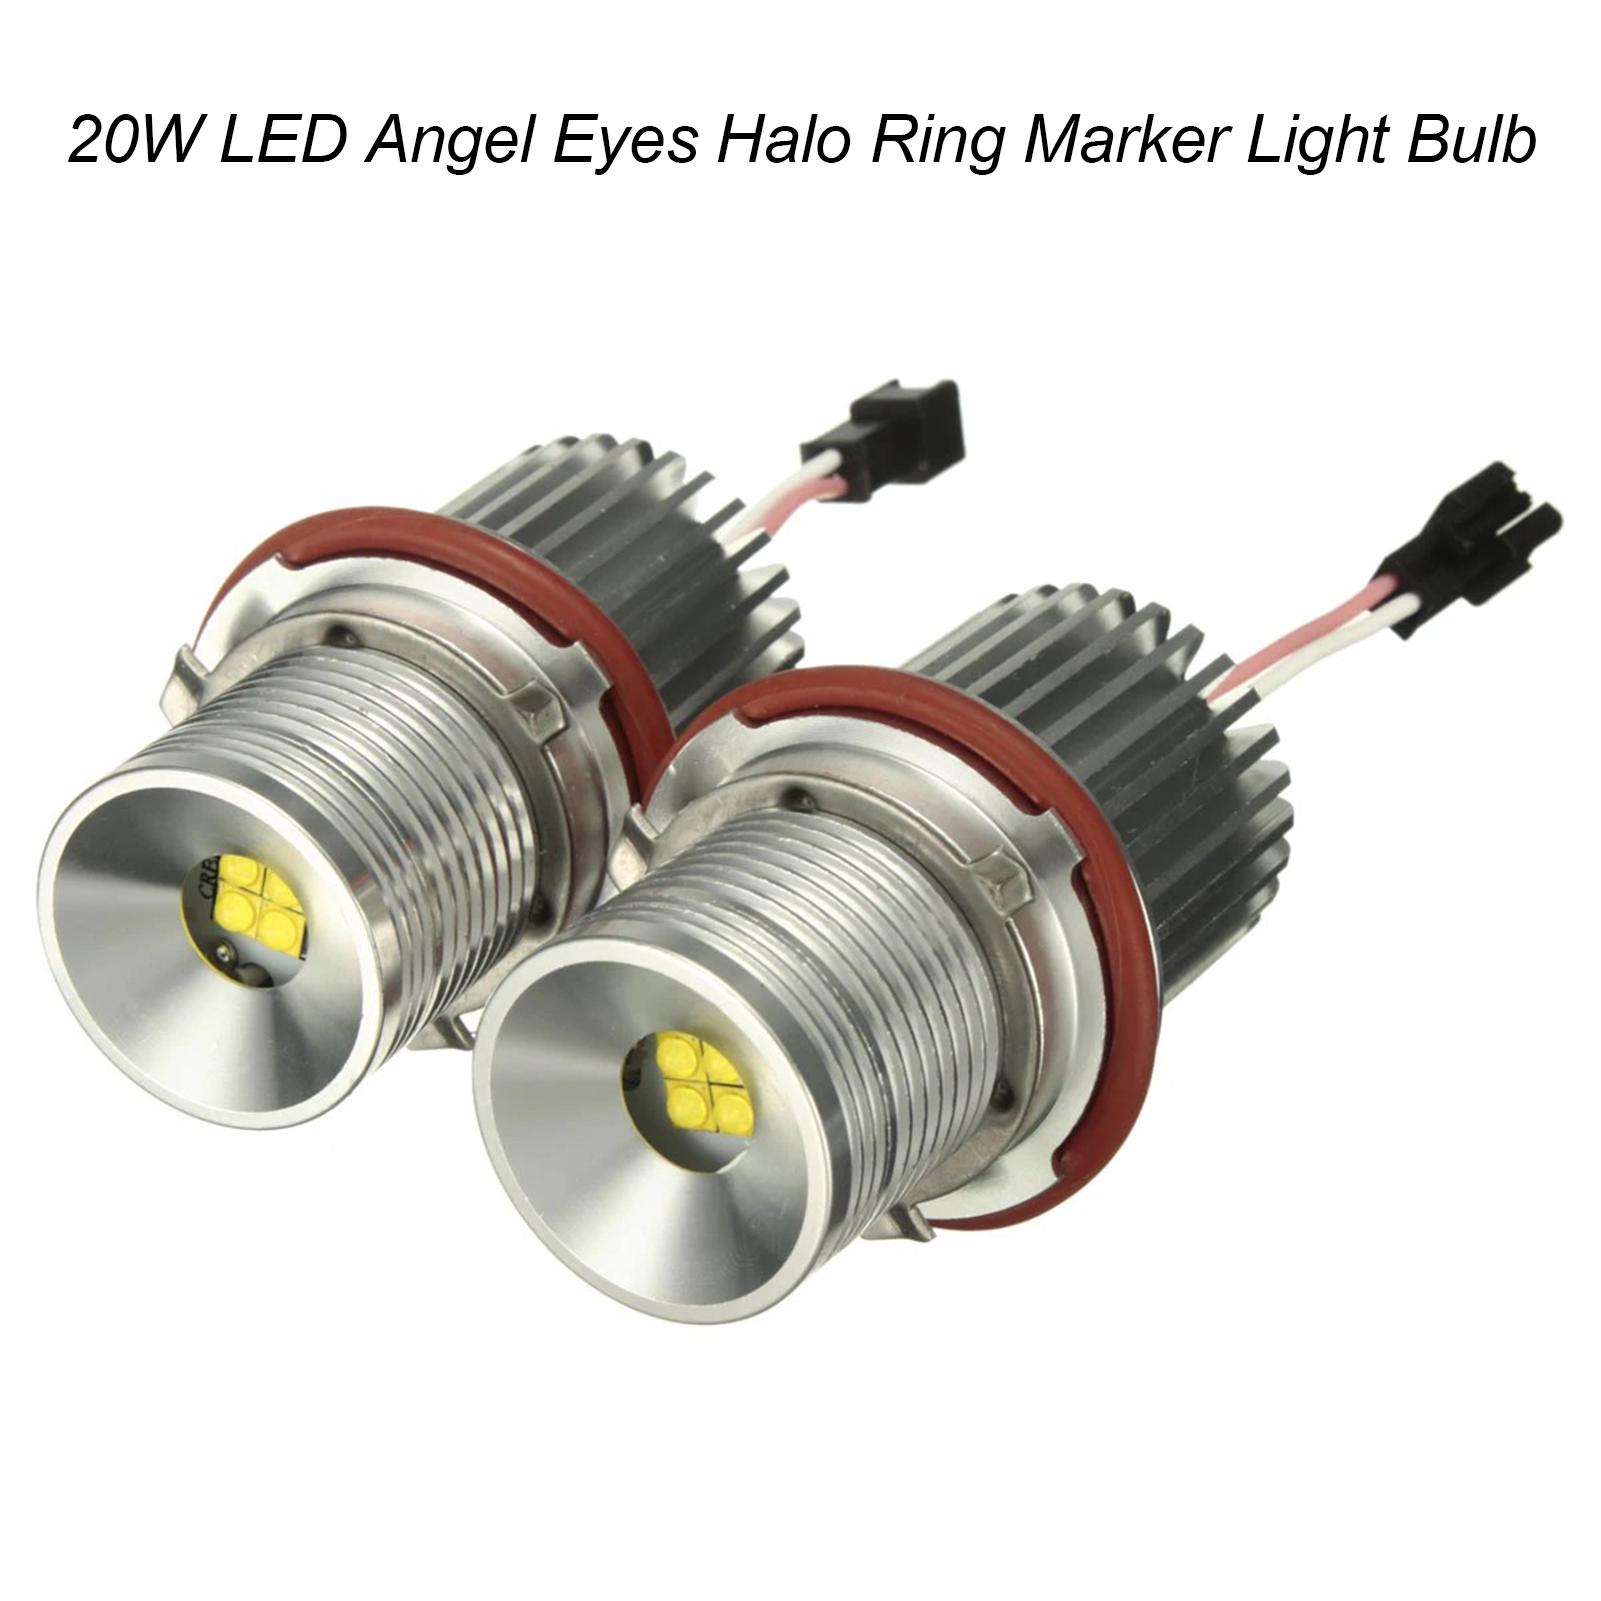 2Pcs 20W LED Angel Eyes Halo Ring Marker Light Bulb Replacement for BMW E87 E39 M5 M6 E83 X3 E60 E63 E65 E66 E53 X5